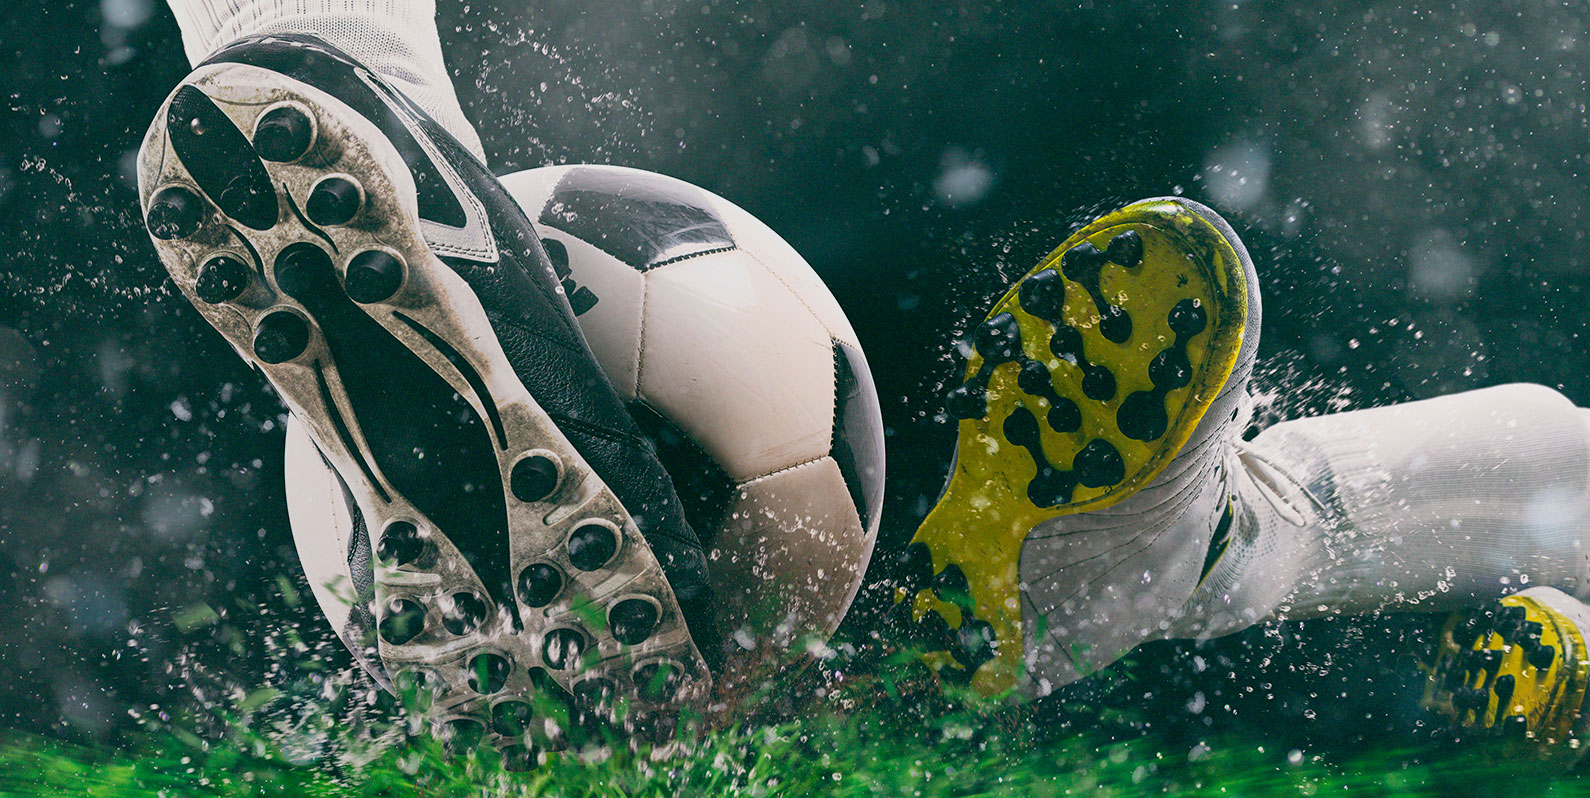 A tecnologia veio para ficar no futebol brasileiro, mas estamos preparados para ela?